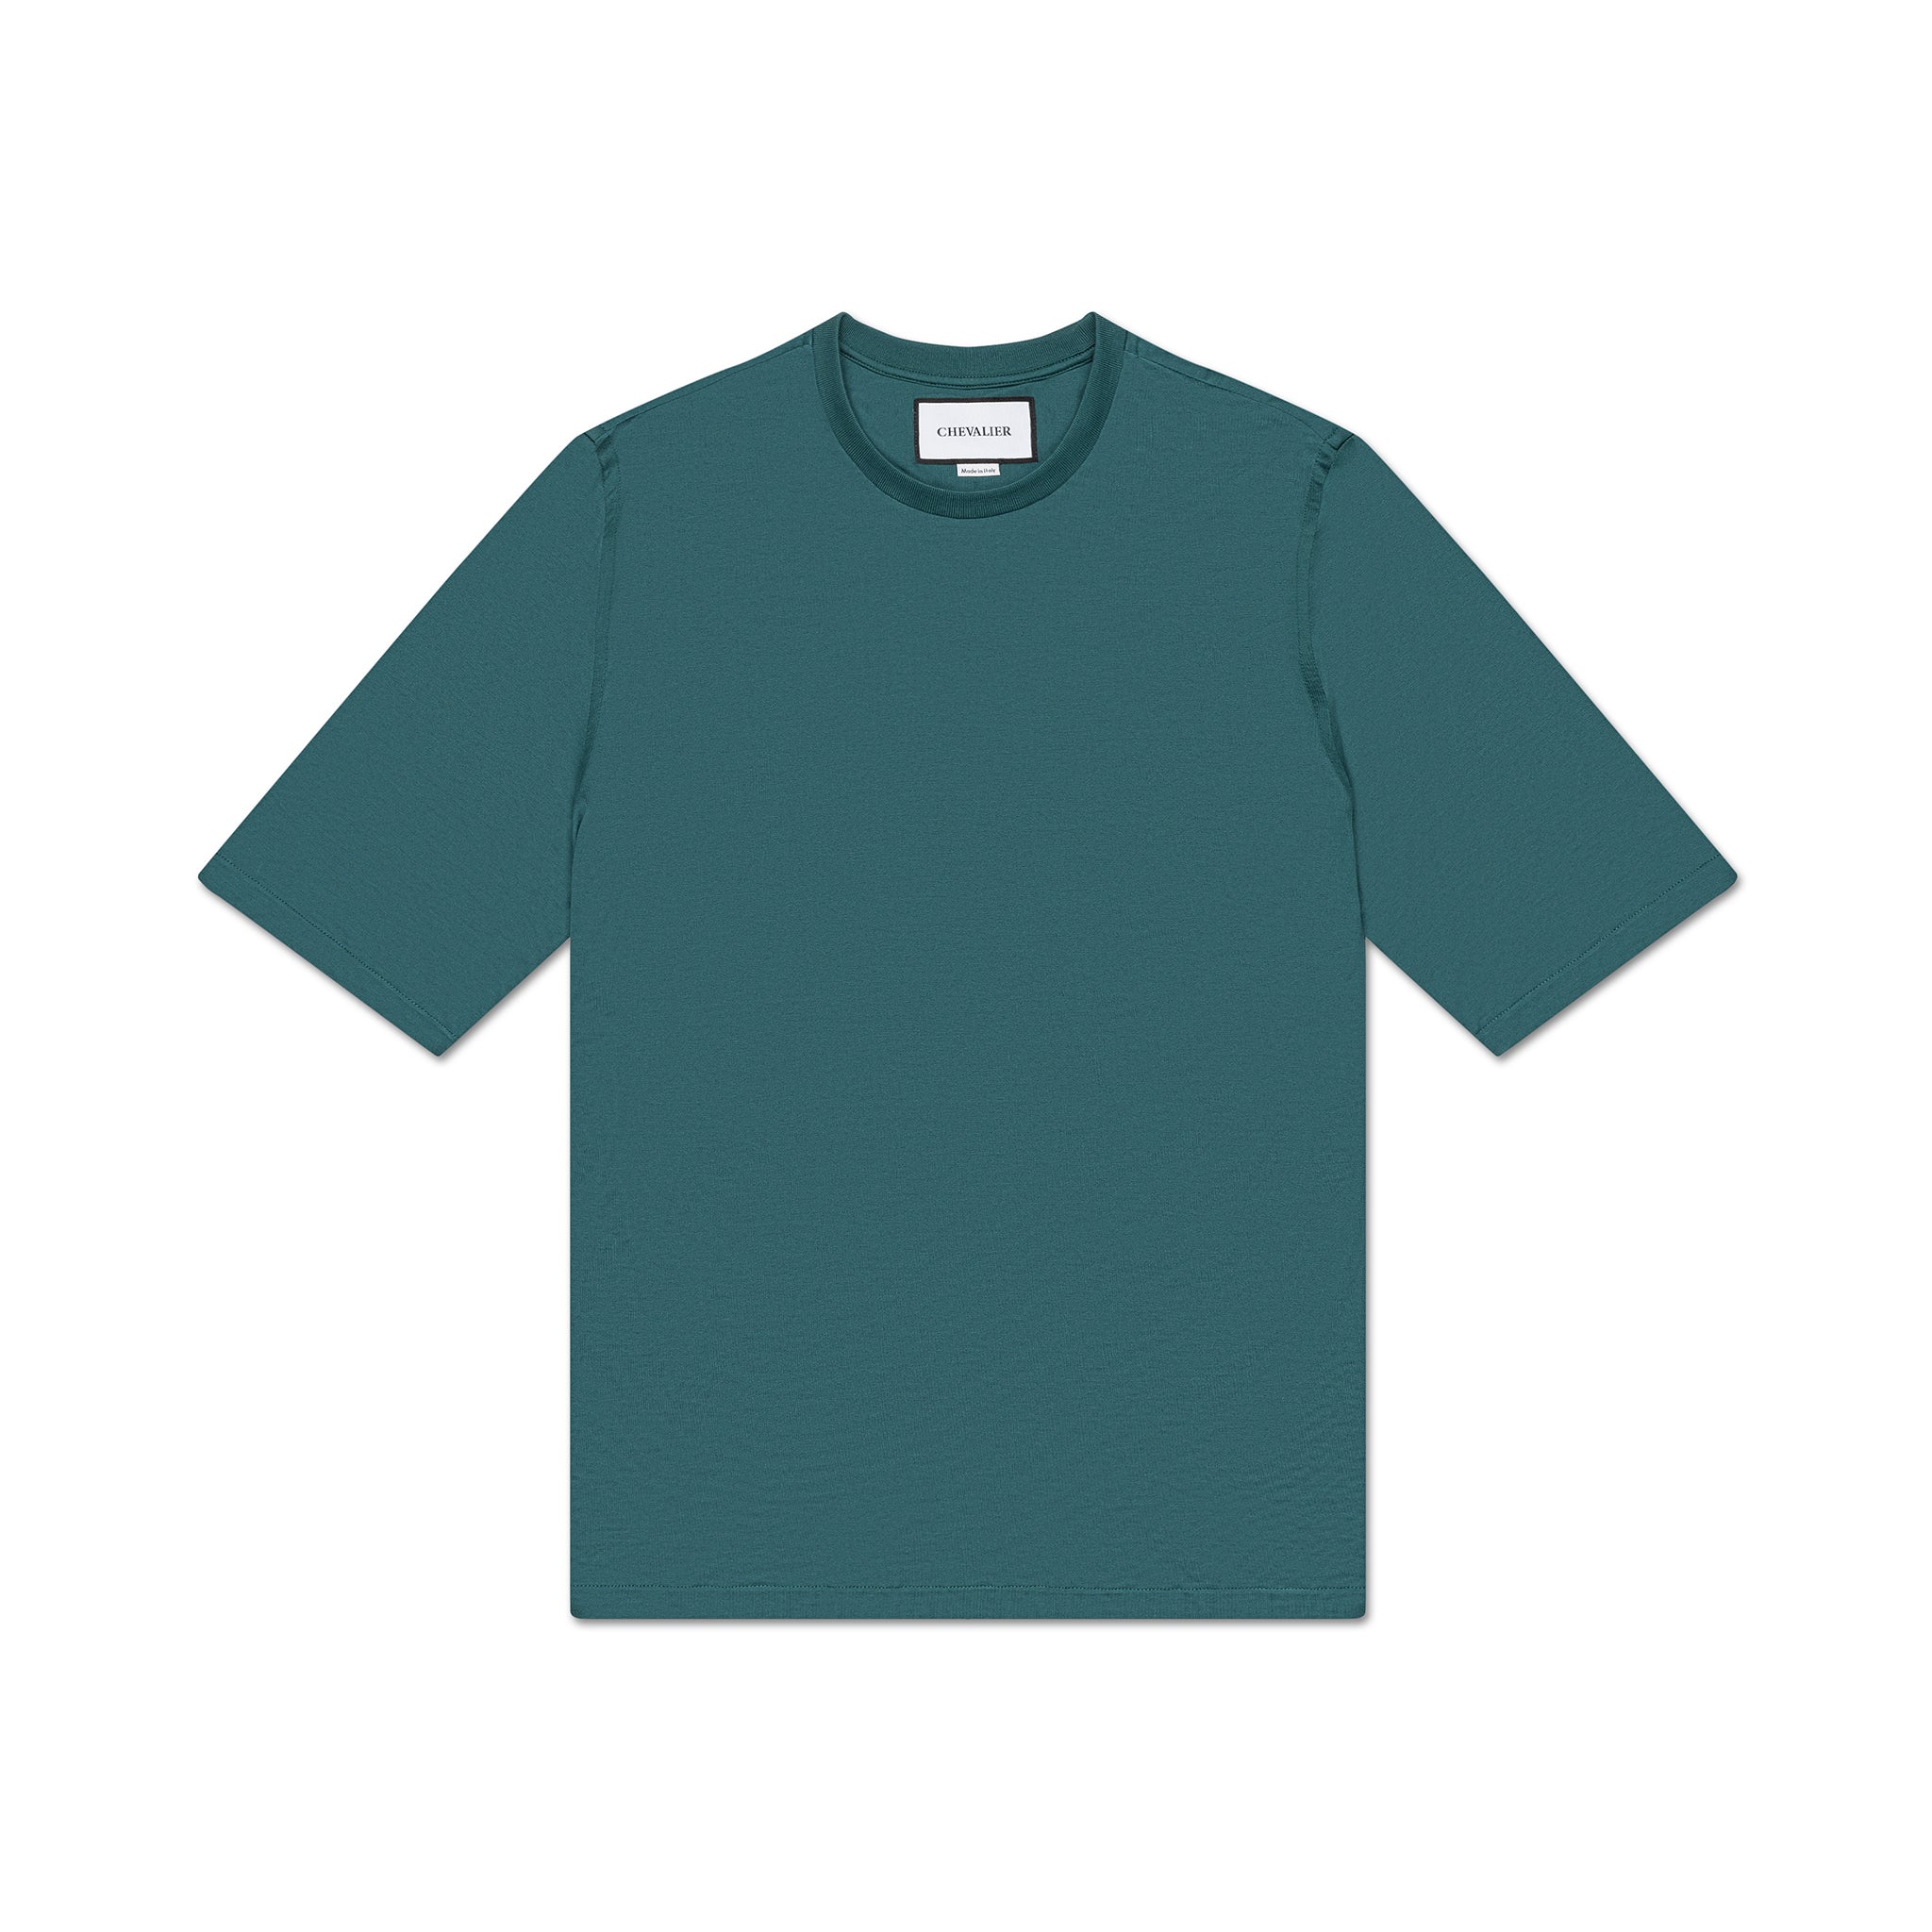 Teal Green Short-Sleeved Jersey T-Shirt